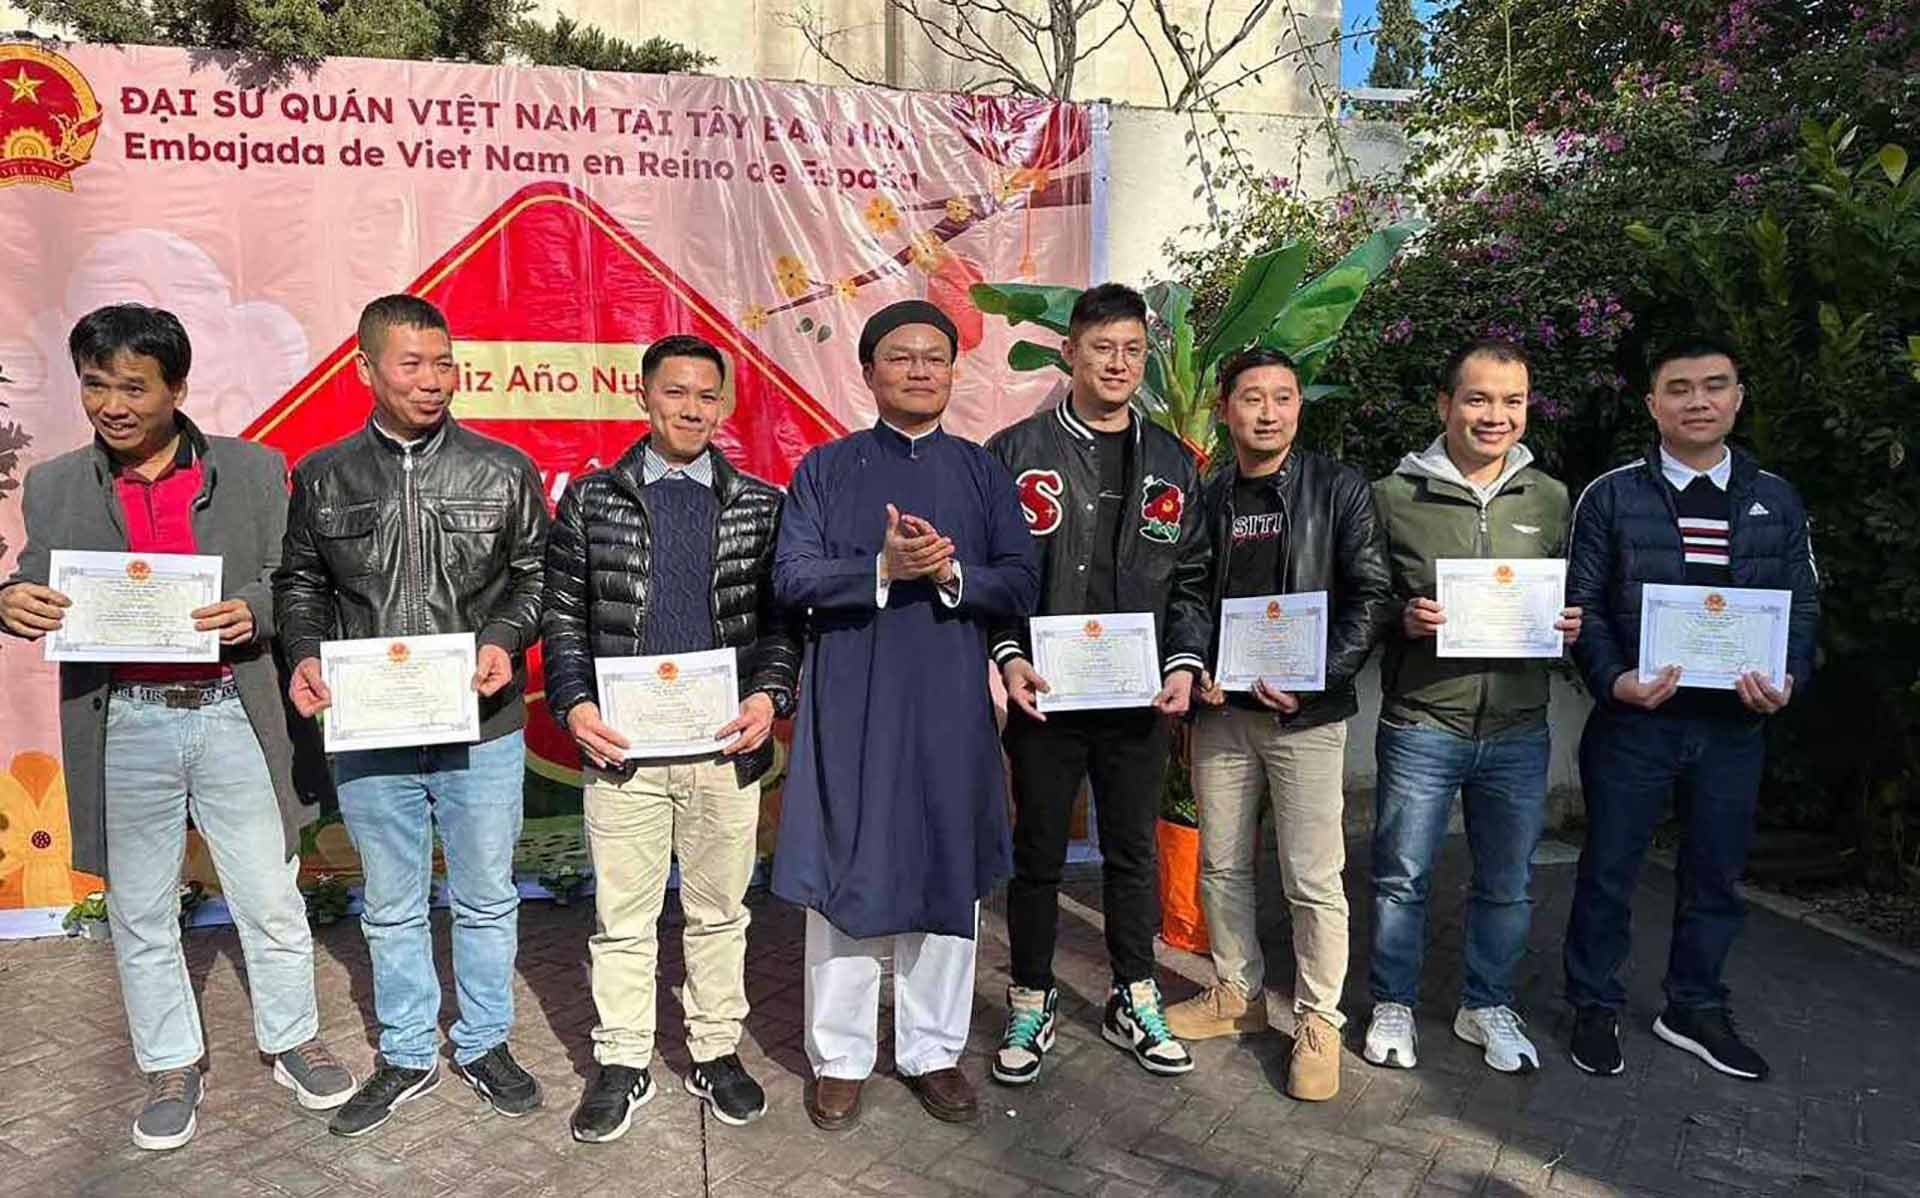 Đại sứ Đoàn Thanh Song trao Giấy khen cho 7 kiều bào tích cực tham gia các hoạt động hướng về quê hương, đất nước, góp phần quảng bá hình ảnh đất nước con người Việt Nam.